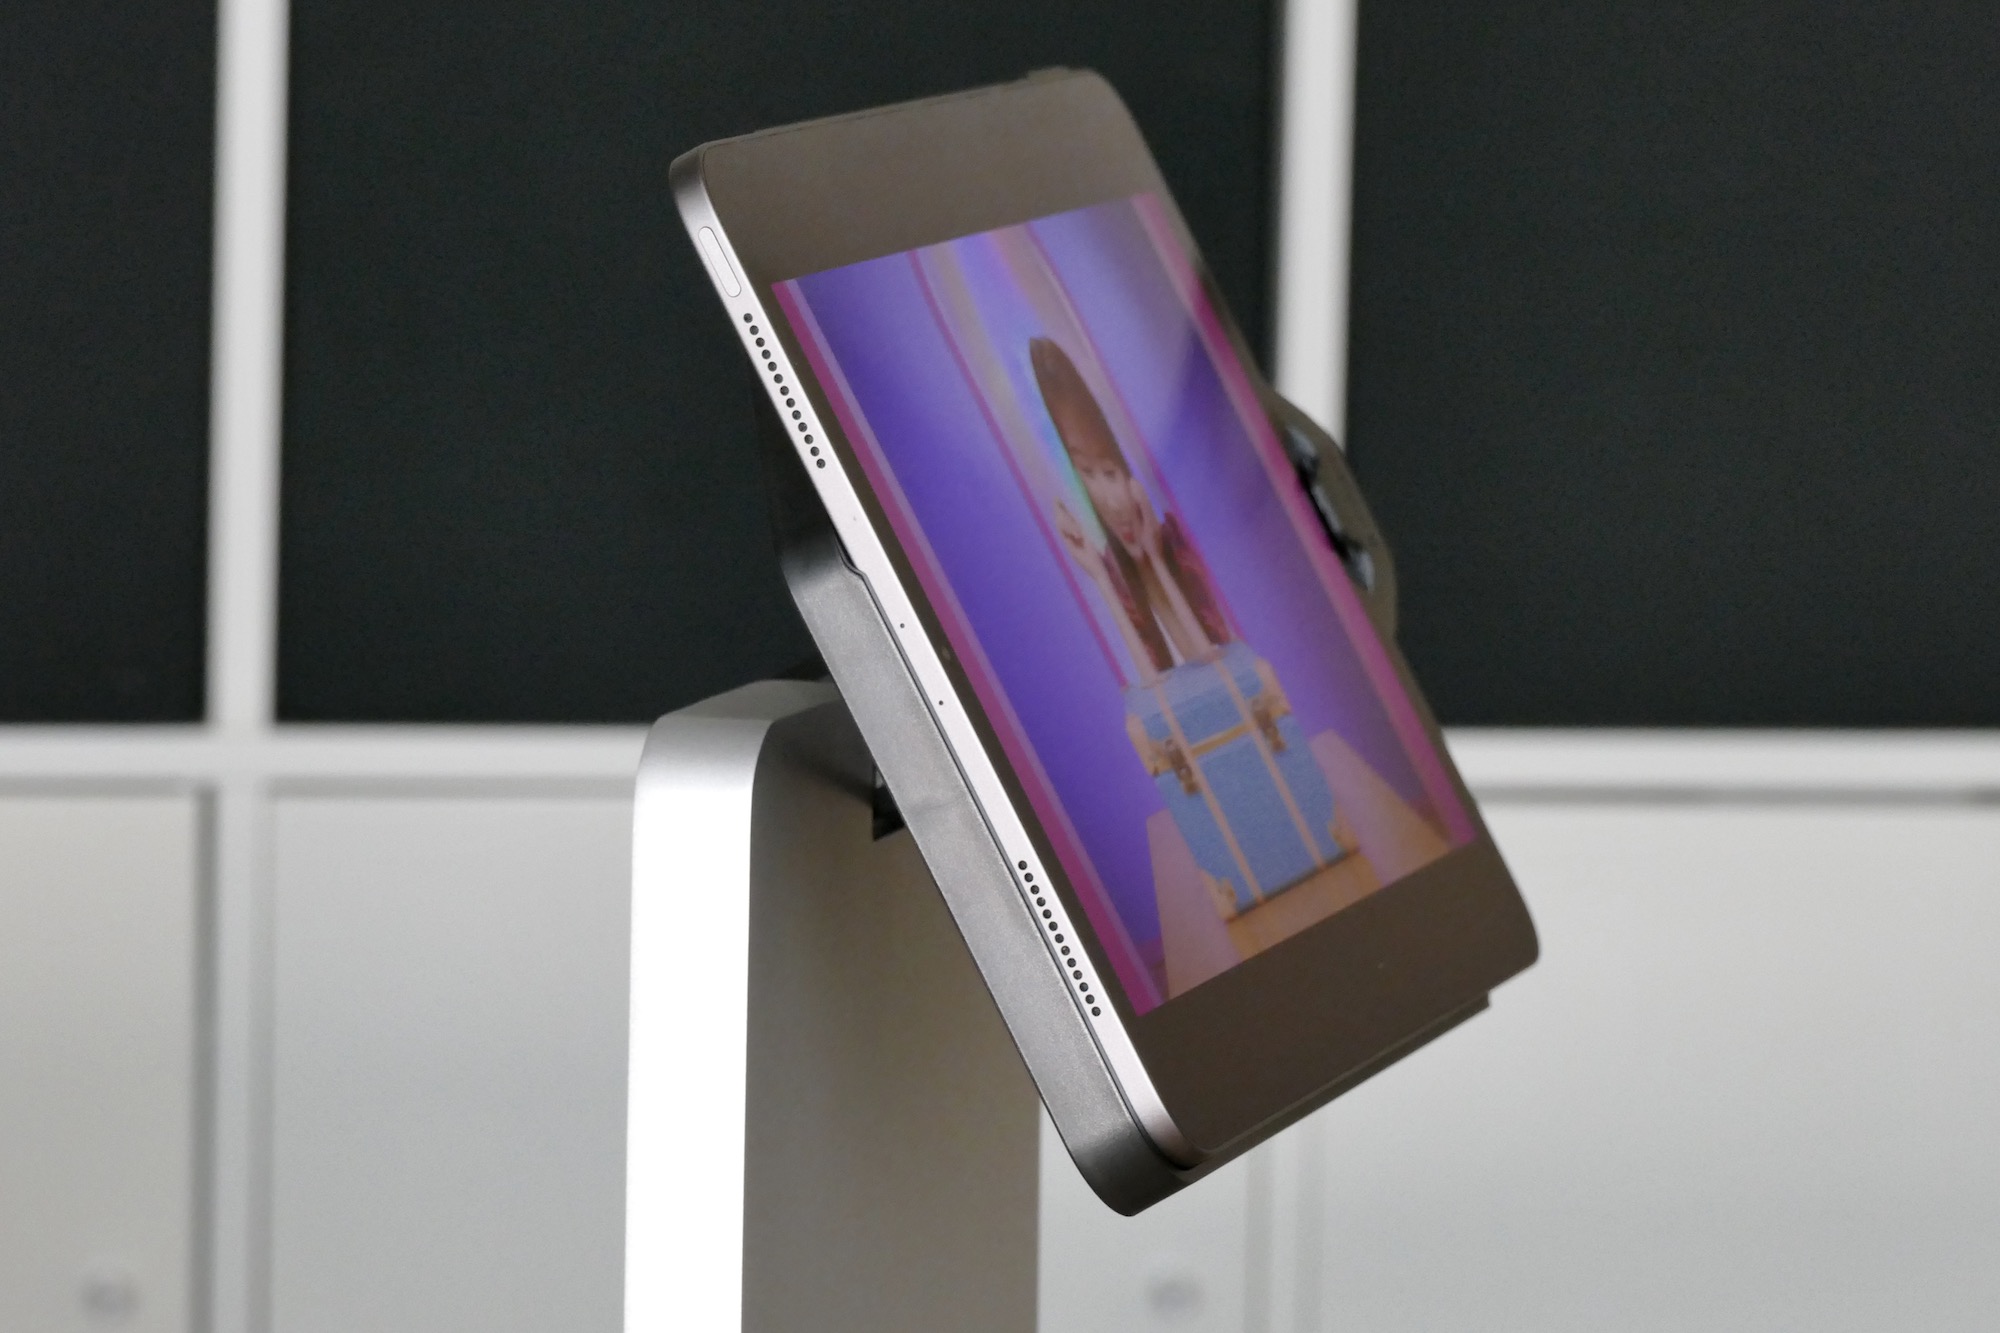 iPad speakers on the Kensington StudioDock